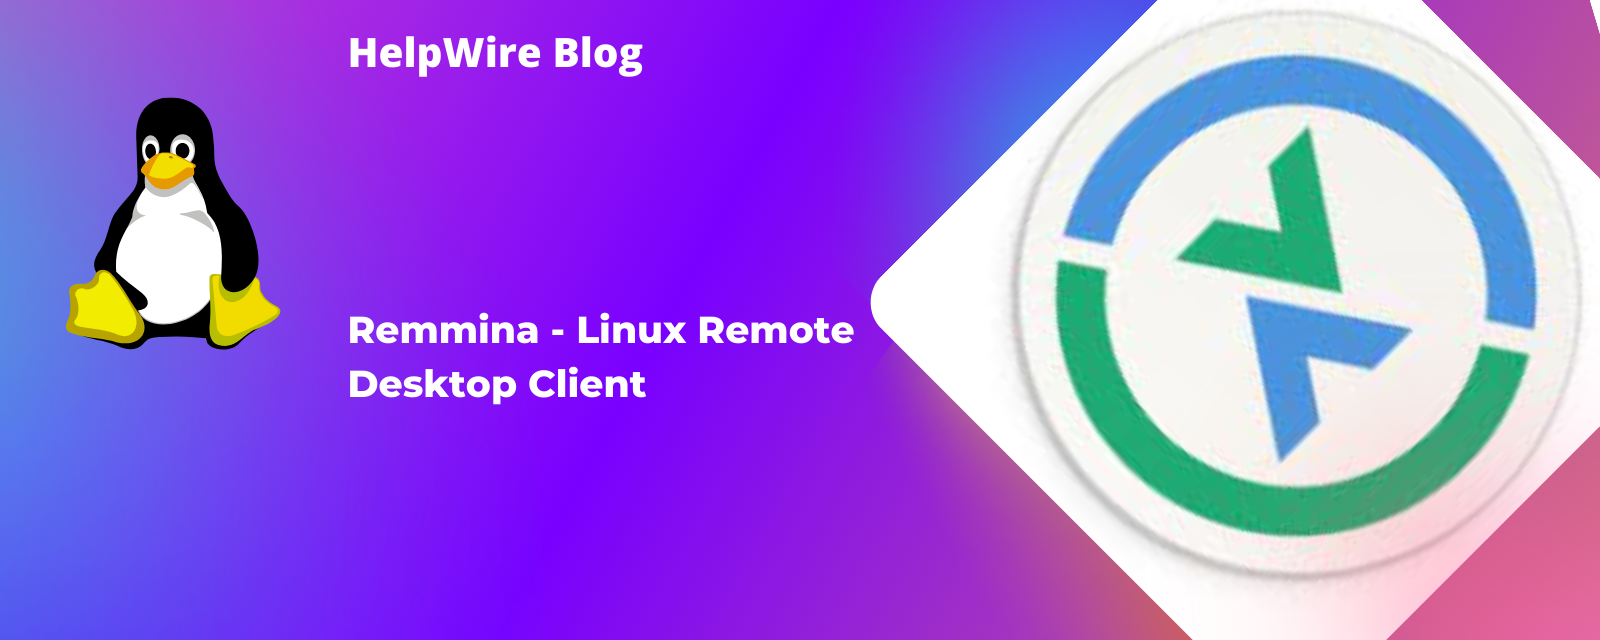 Remmina - Linux Remote Desktop Client